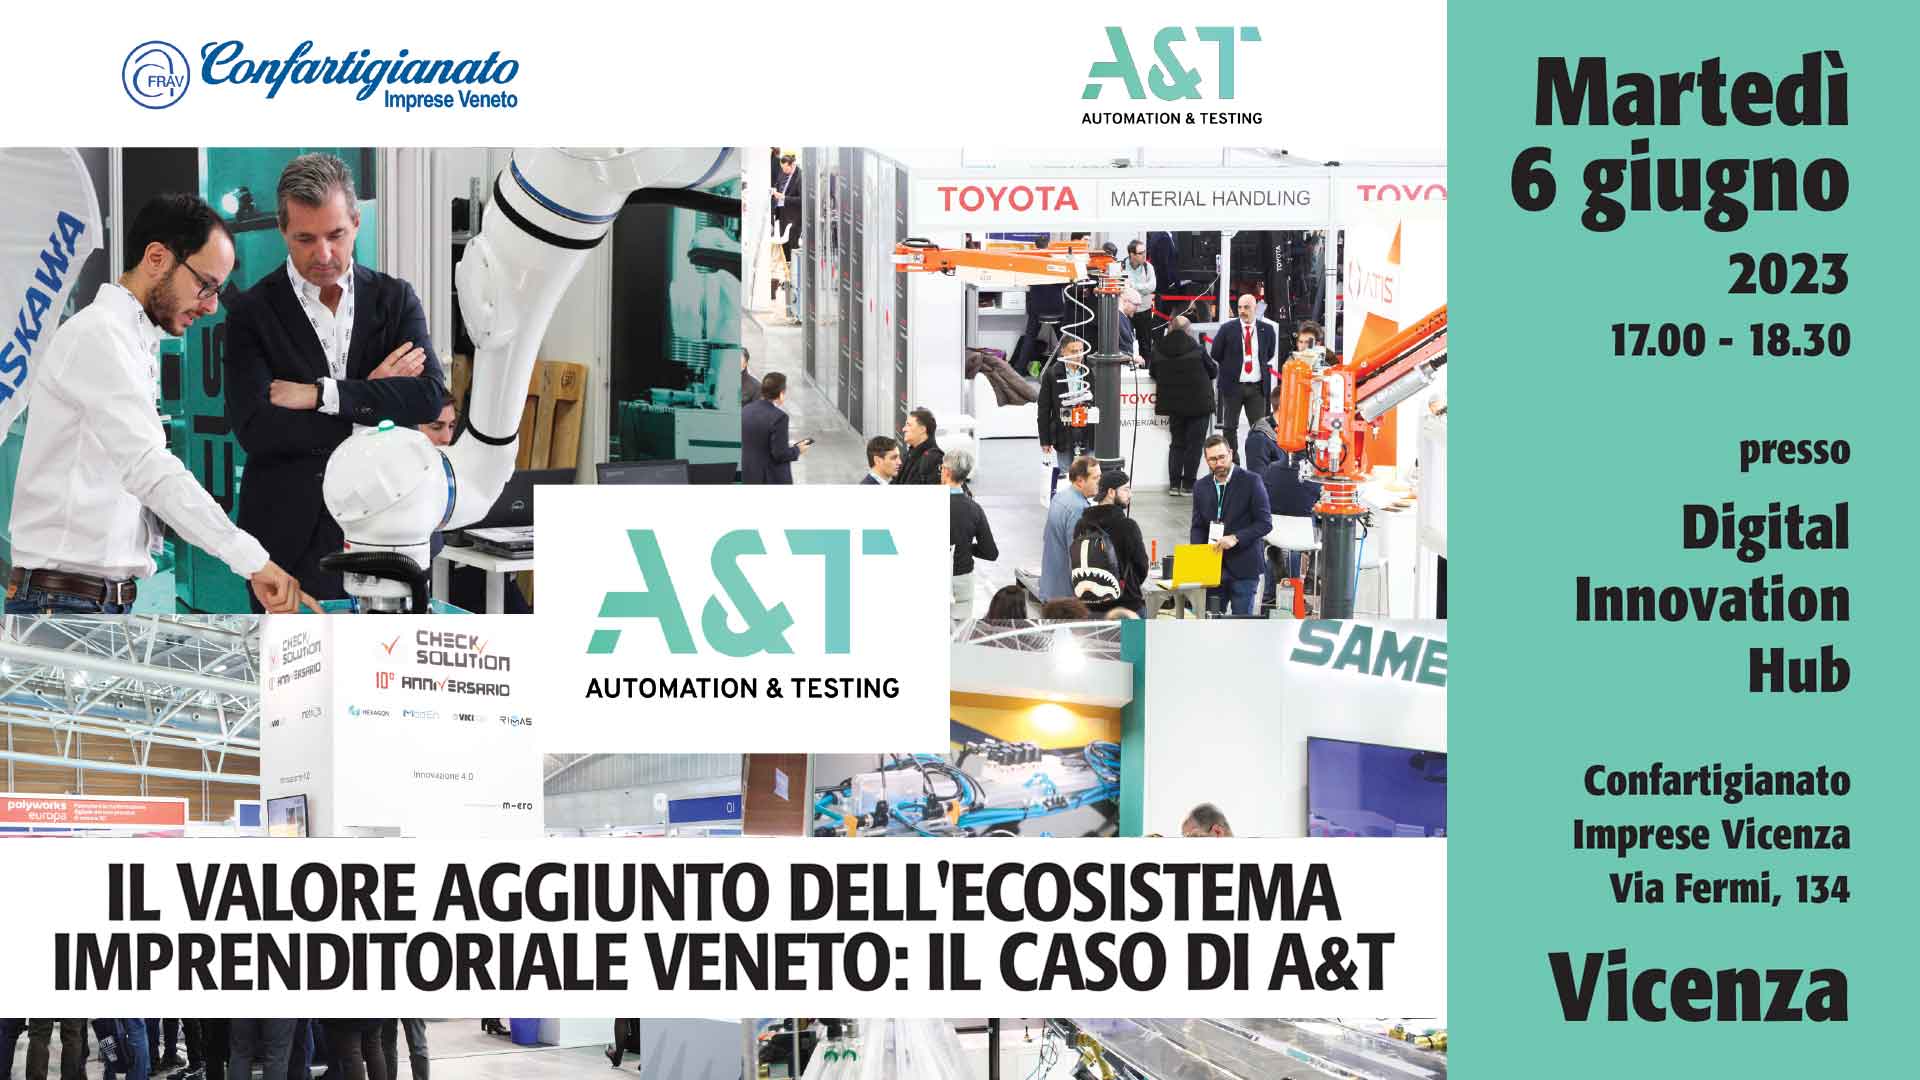 METALMECCANICA – Martedì 6 giugno, a Vicenza, presentazione del progetto di partecipazione collettiva alla fiera A&T 2023